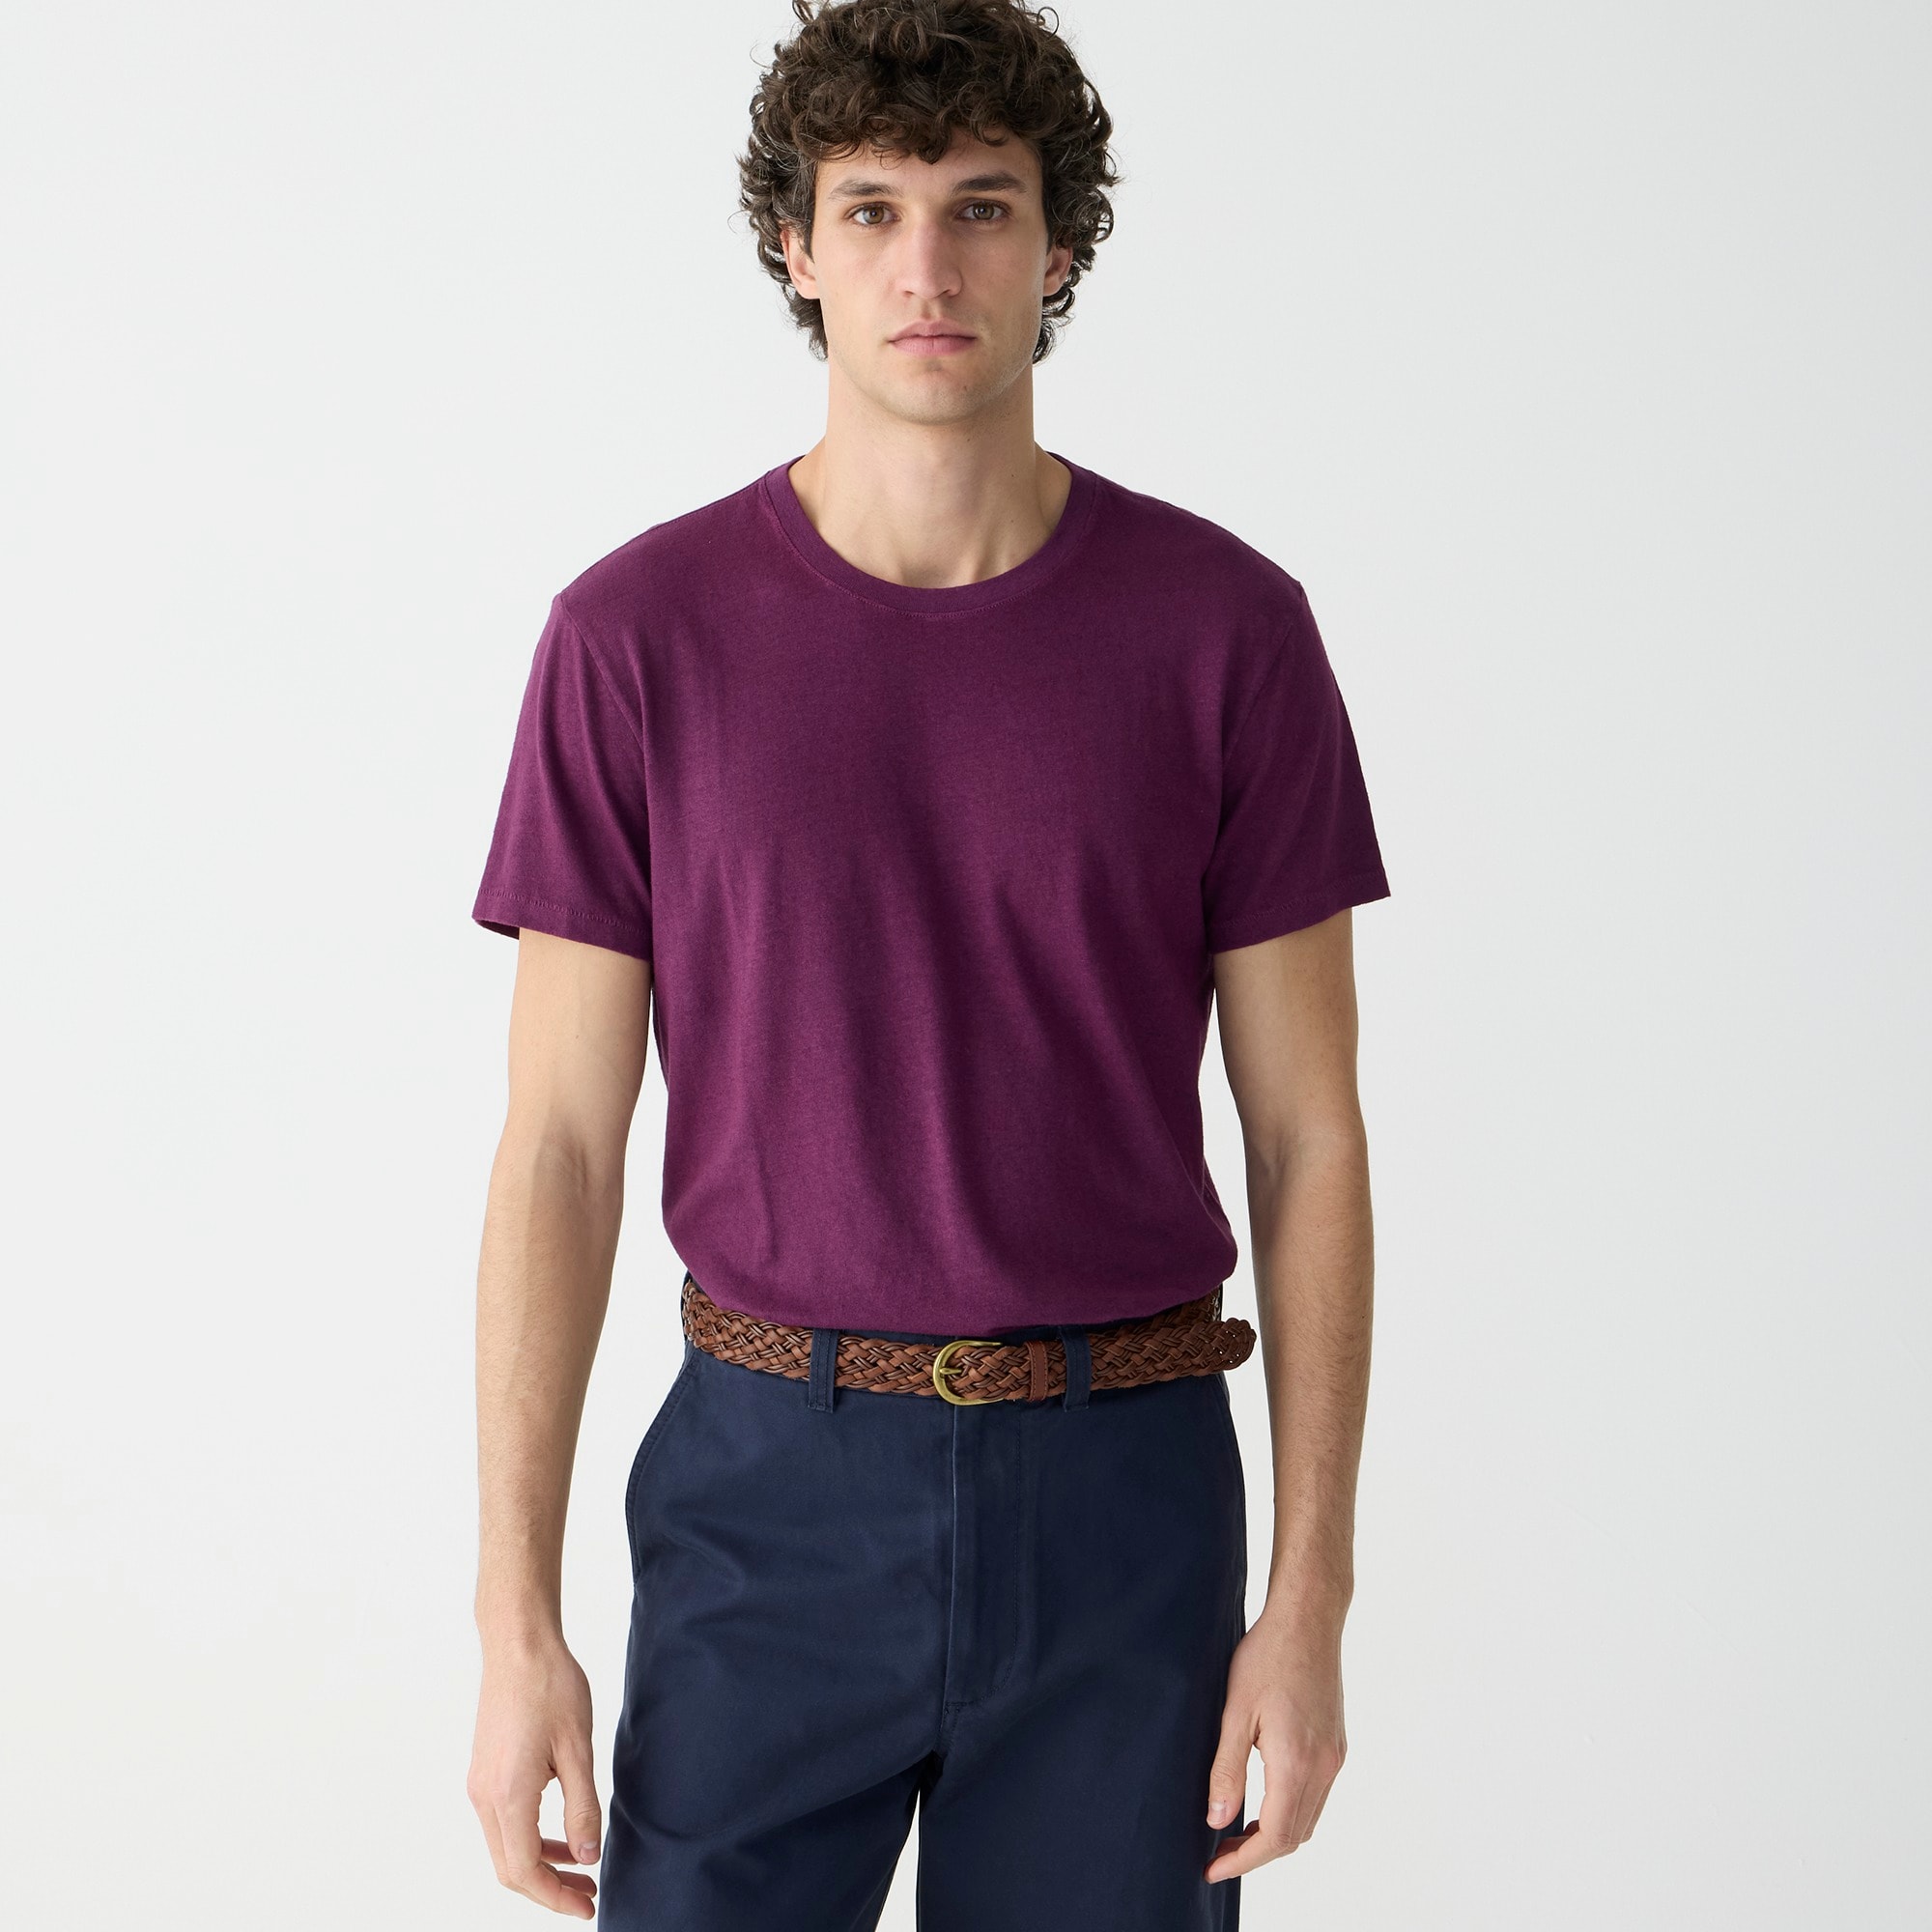 j.crew: hemp-organic cotton blend t-shirt for men